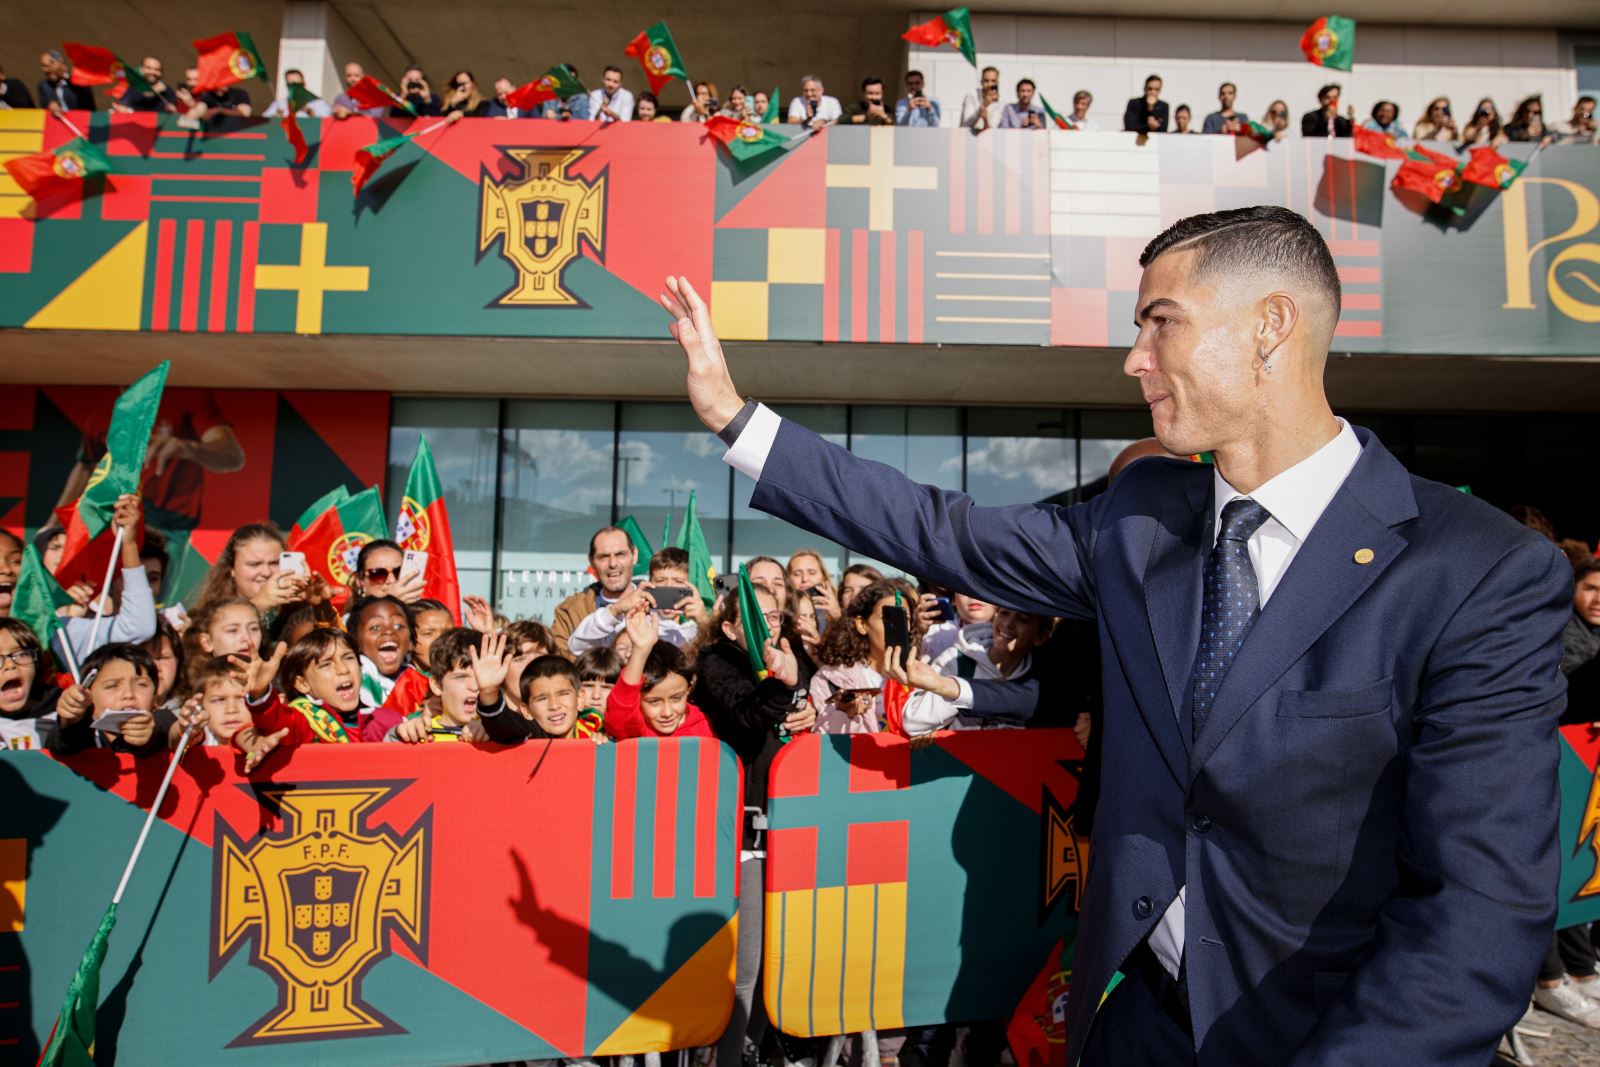 Ronaldo và World Cup 2022: Ronaldo là một cầu thủ được yêu thích trên toàn thế giới và anh đã từng giành chiến thắng trong nhiều giải đấu lớn. Vào năm 2022, anh sẽ tiếp tục cống hiến cho ĐT Bồ Đào Nha tại World Cup và chúng ta đang rất mong đợi những màn trình diễn đẳng cấp từ siêu sao này.